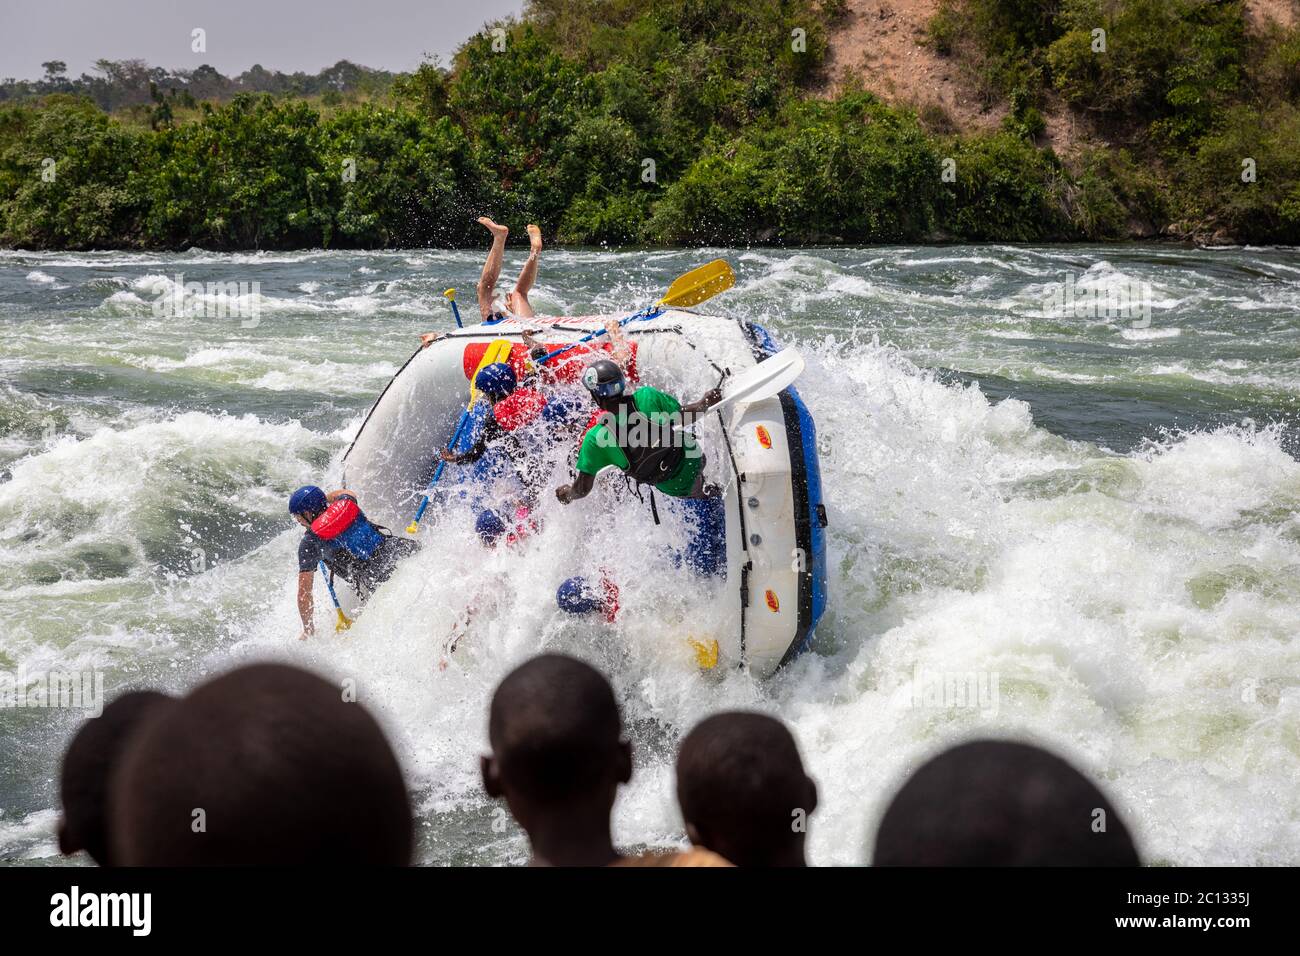 Gli spettatori guardano come un'acqua di whlte zattera durante una spedizione di rafting sulle rapide sul fiume Nilo vicino a Jinja, Uganda, Africa Foto Stock